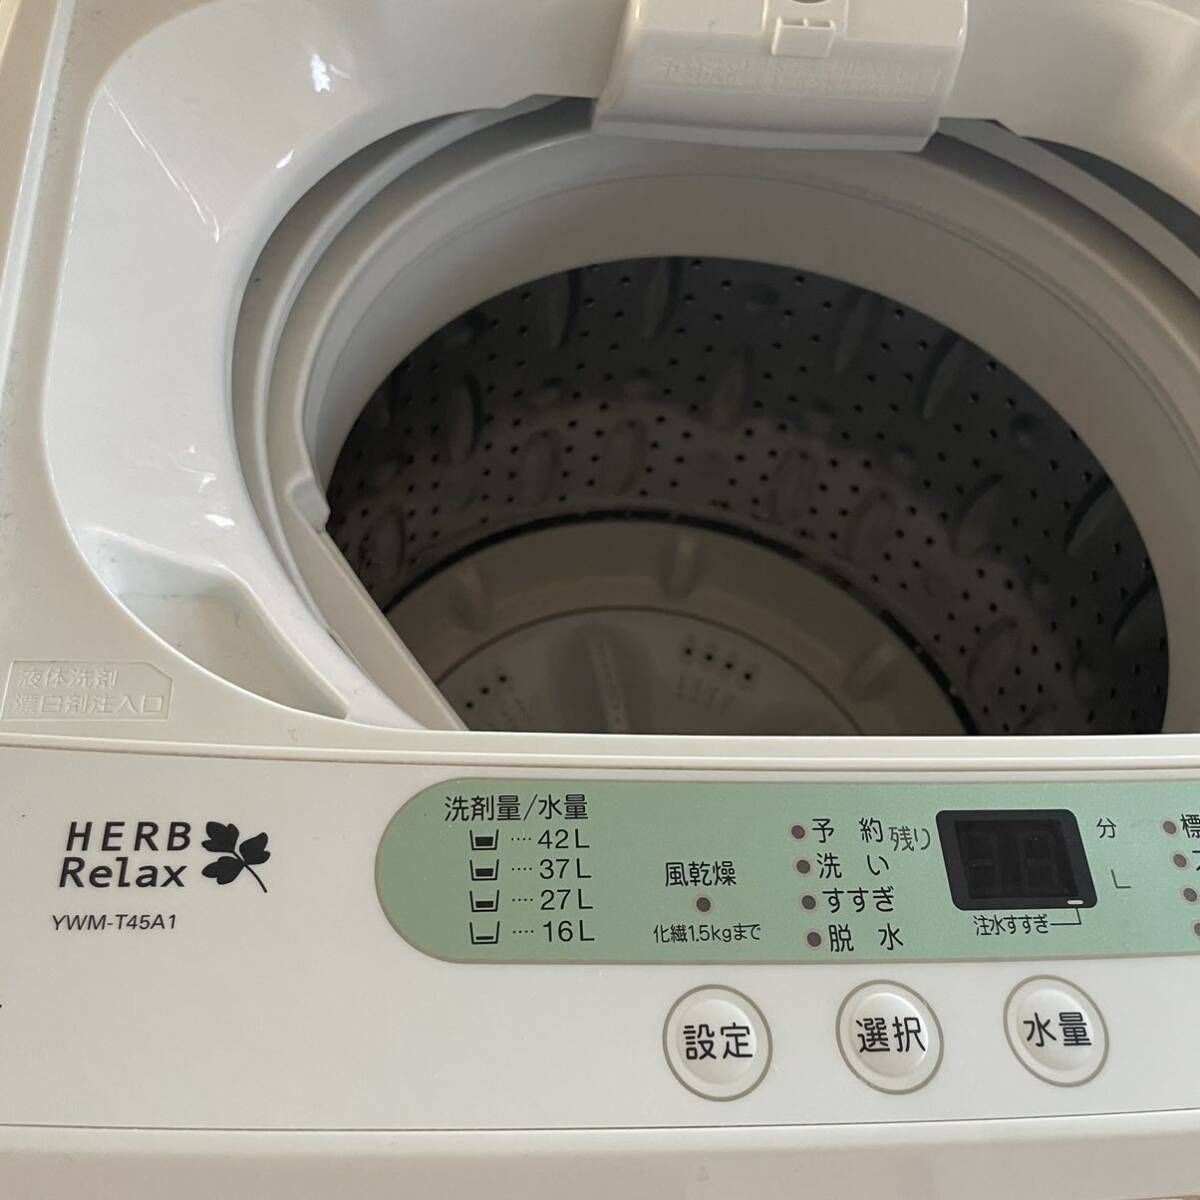 YAMADA full automation washing machine 2017 year made yamada4.5. washing machine YWM-T45A1